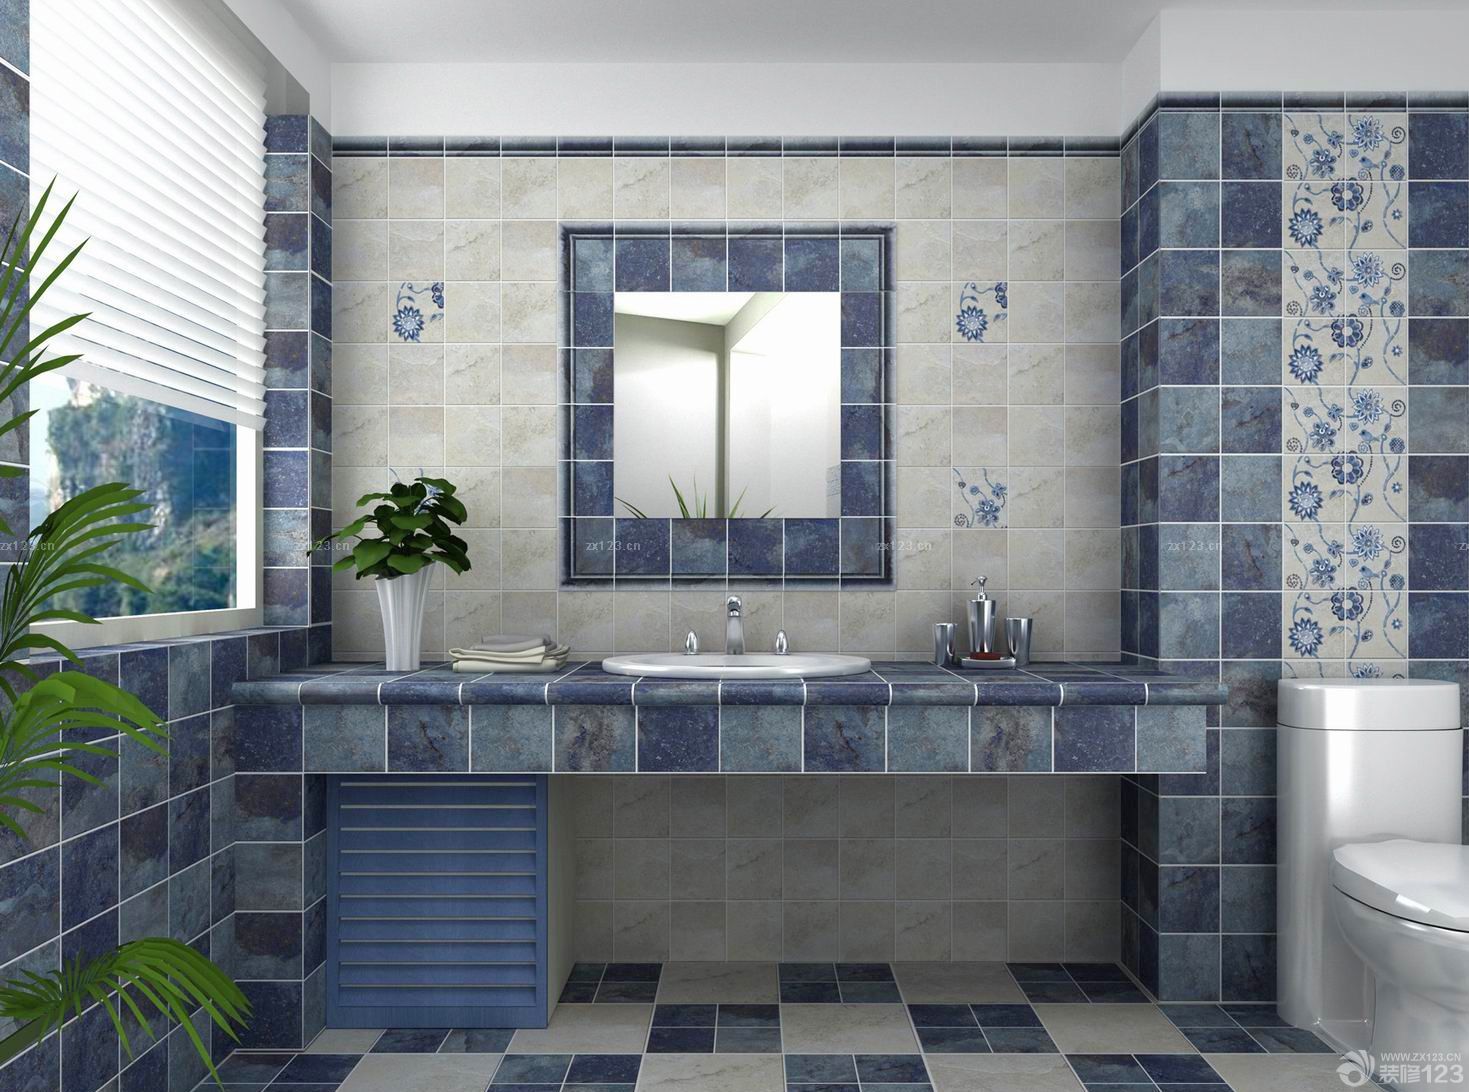 地中海风格家居厕所窗帘设计效果图